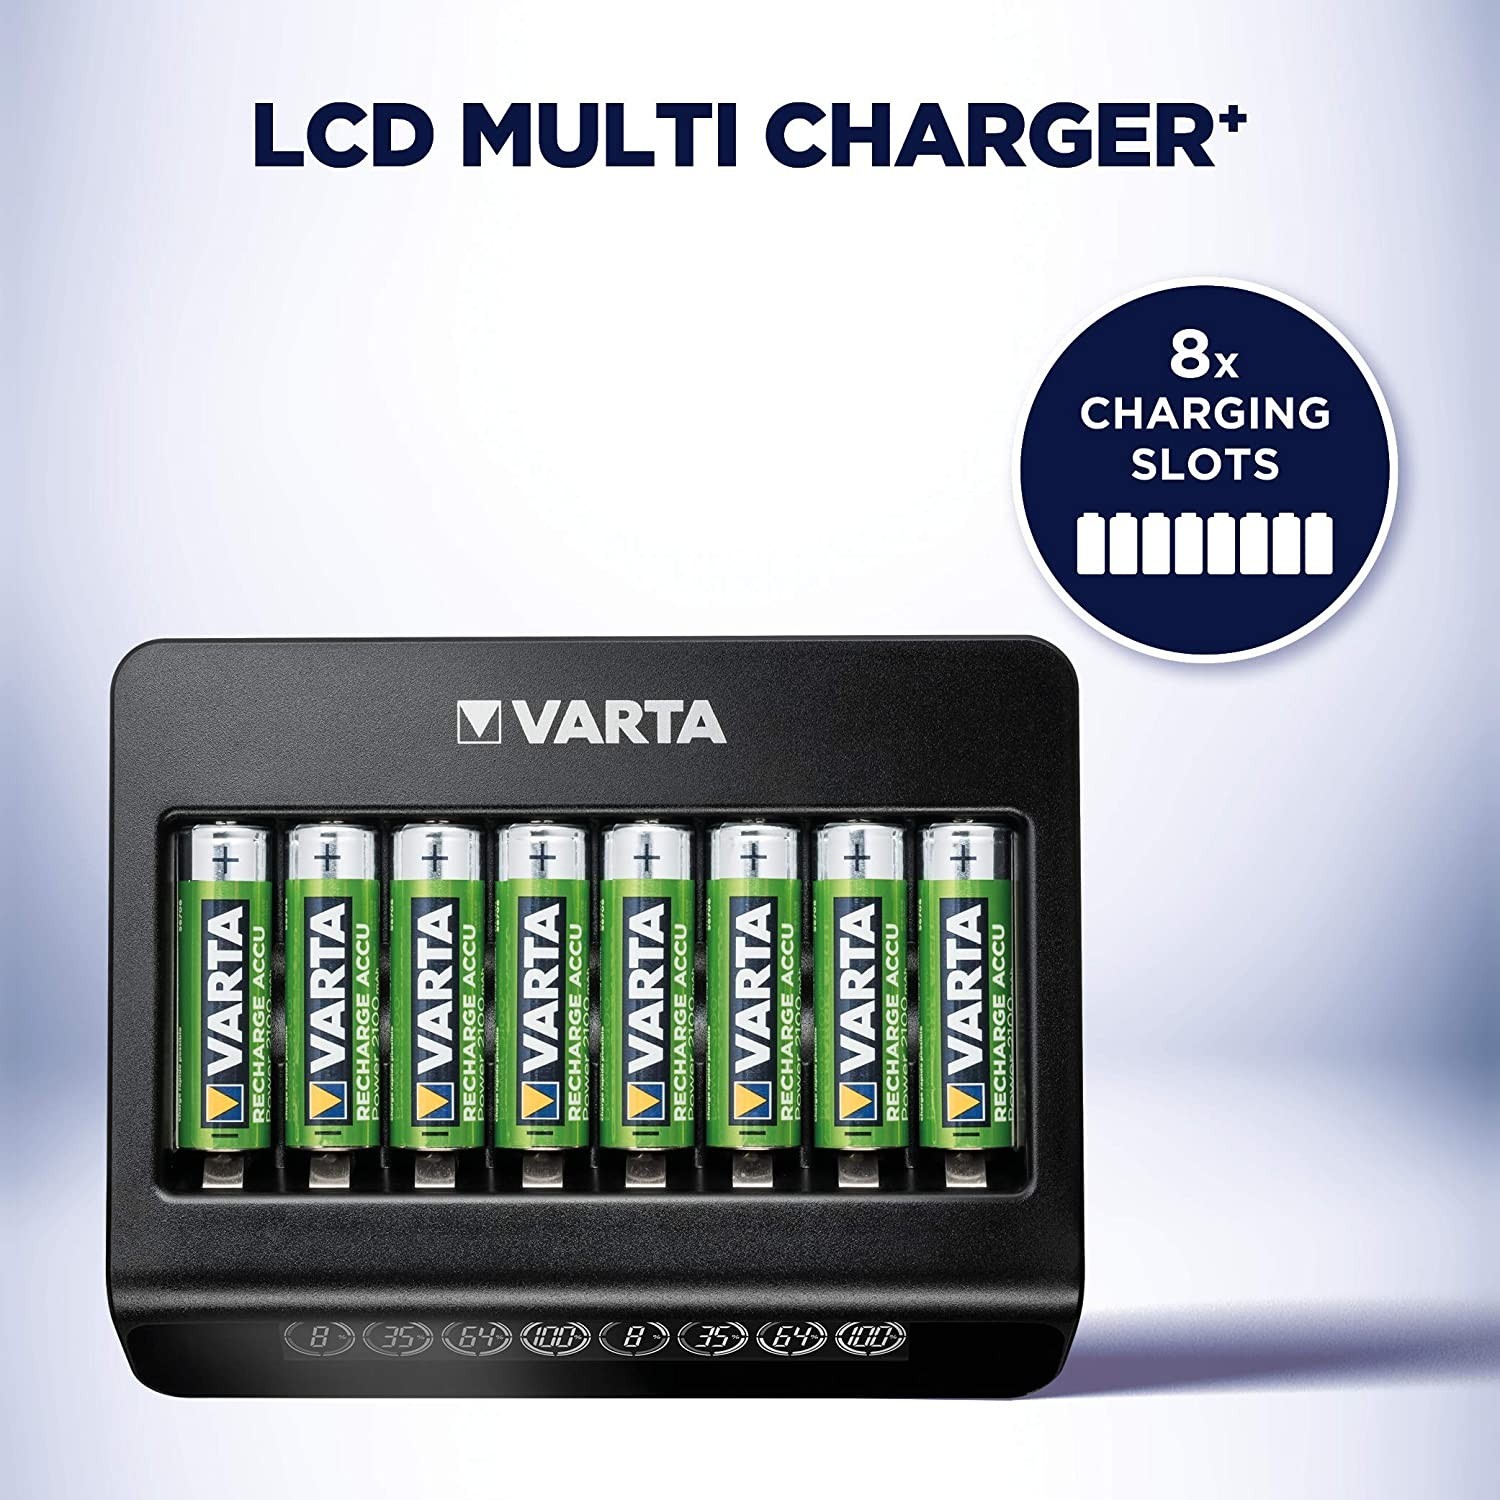 Зарядное устройство Varta LCD Multi Charger Plus (57681101401) отзывы - изображения 5